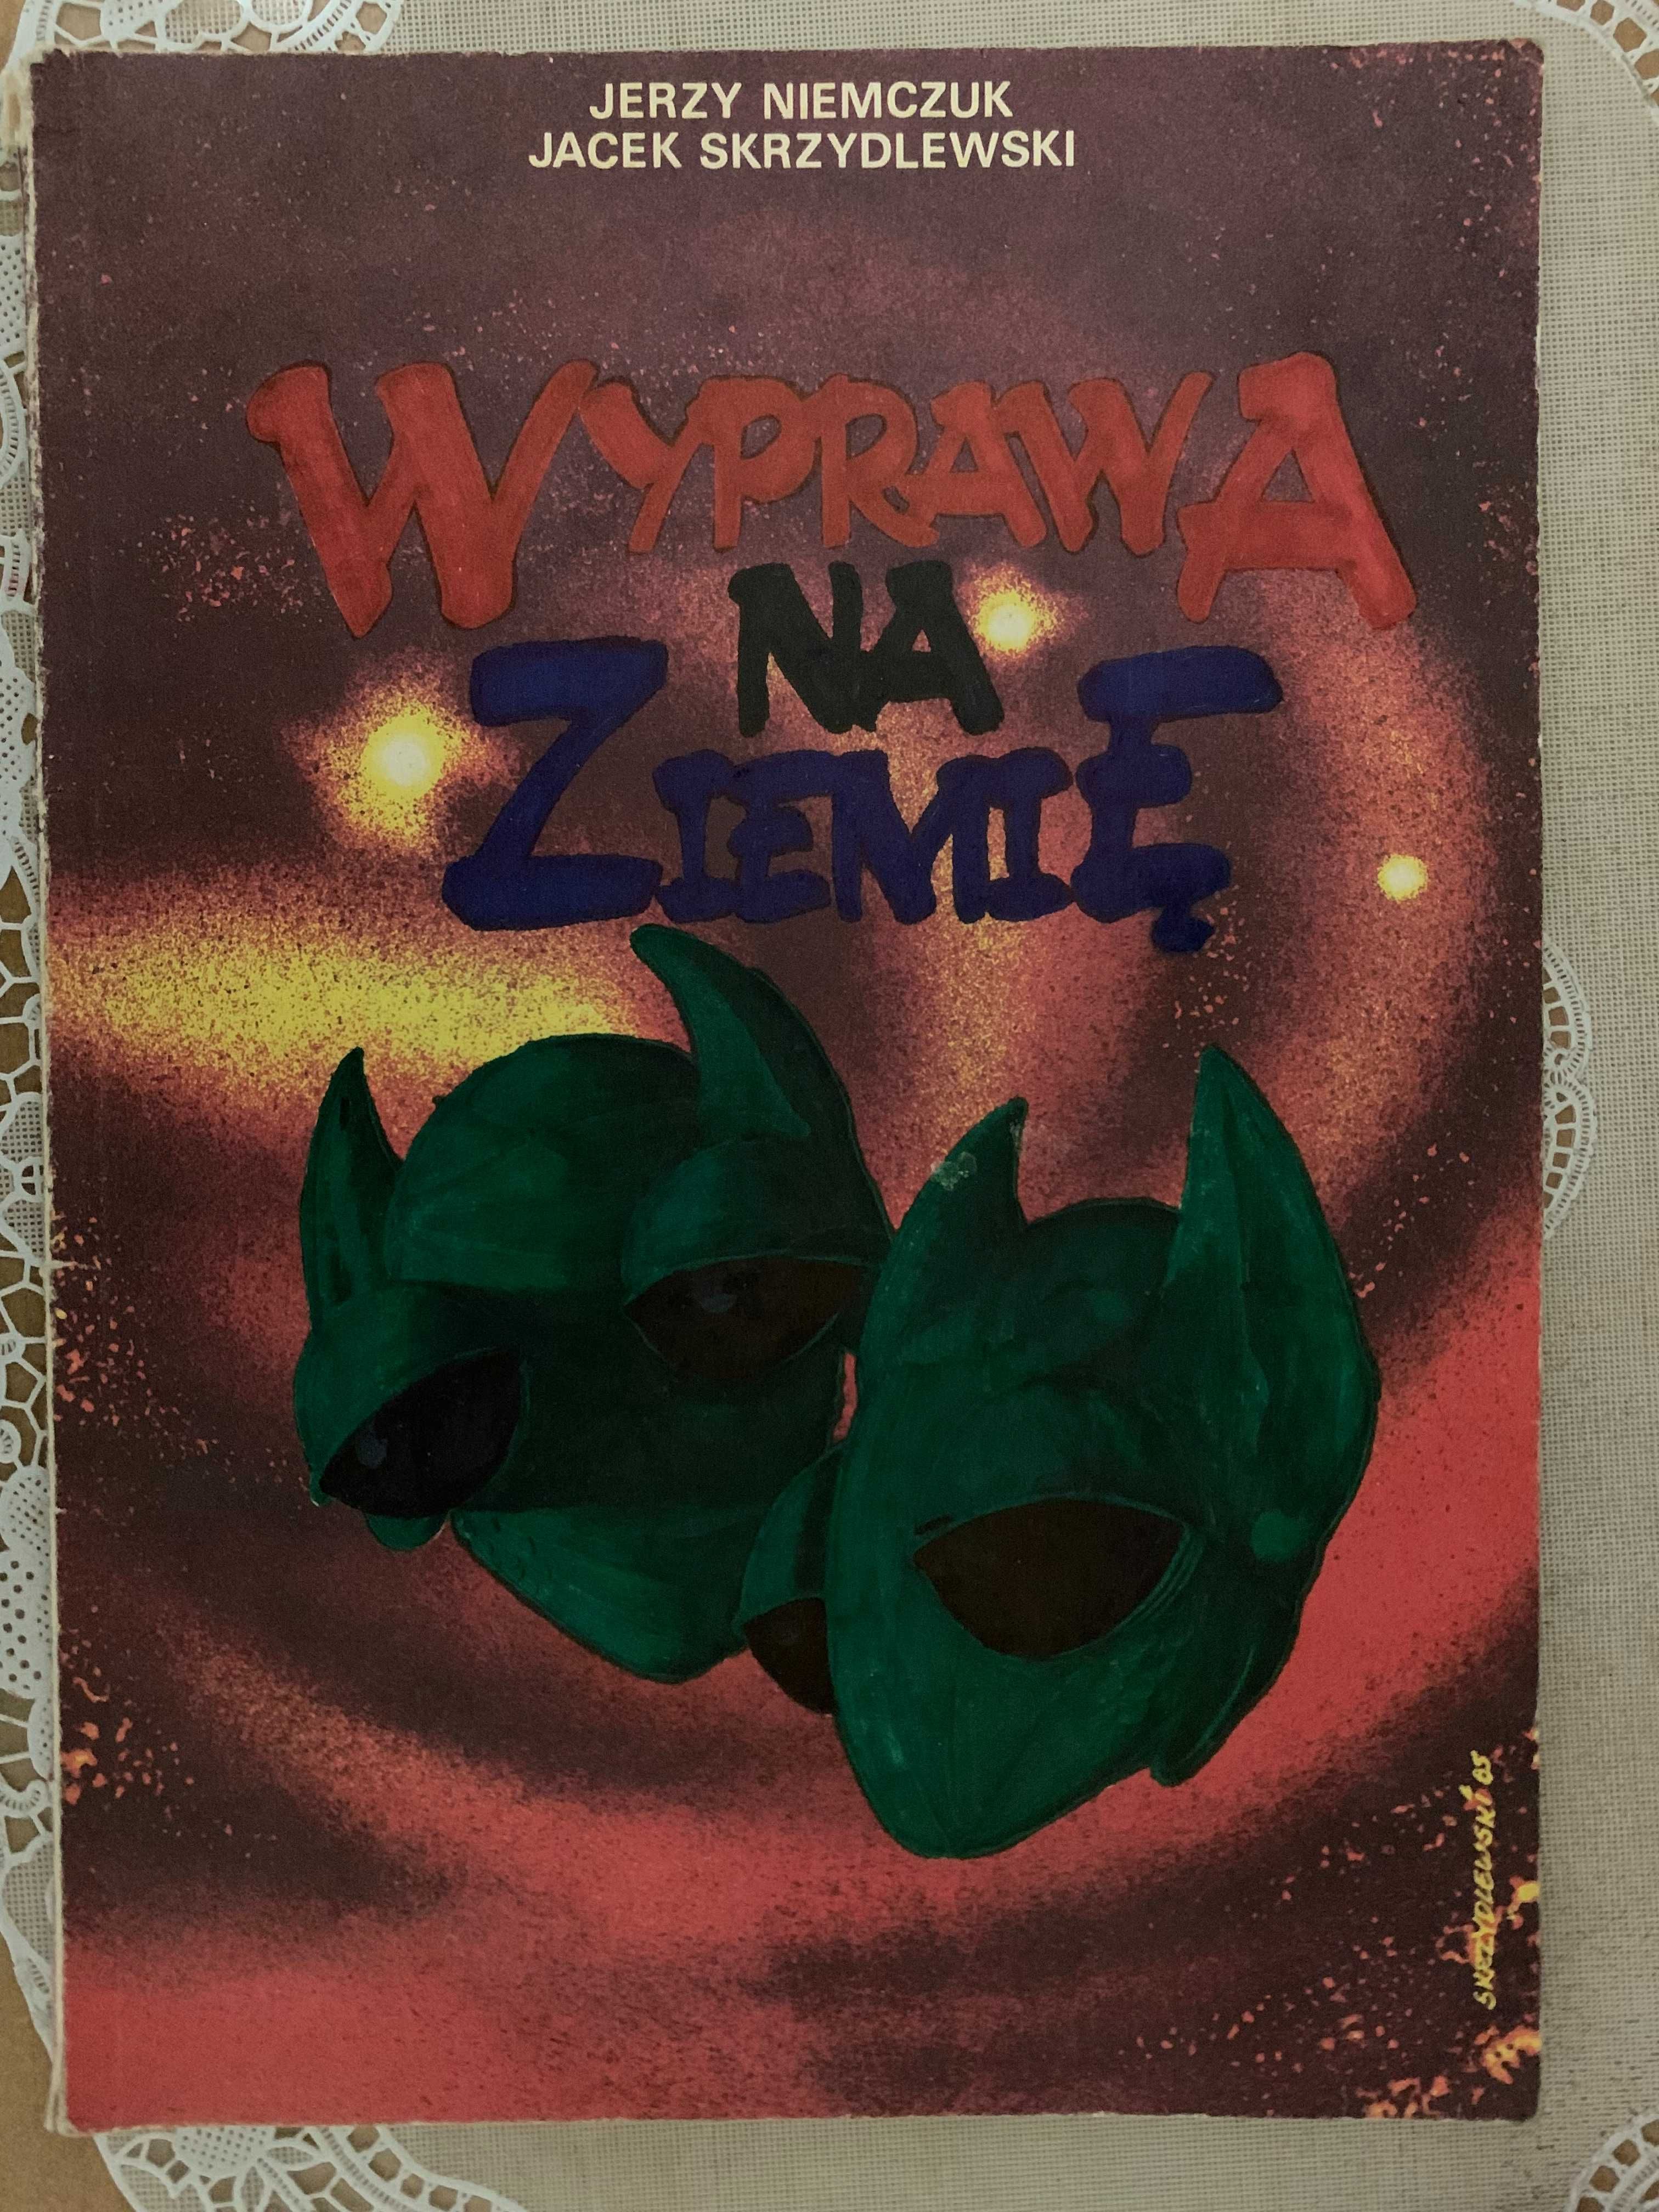 Wyprawa na Ziemię Jerzy Niemczuk Jacek Skrzydlewski komiks PRL